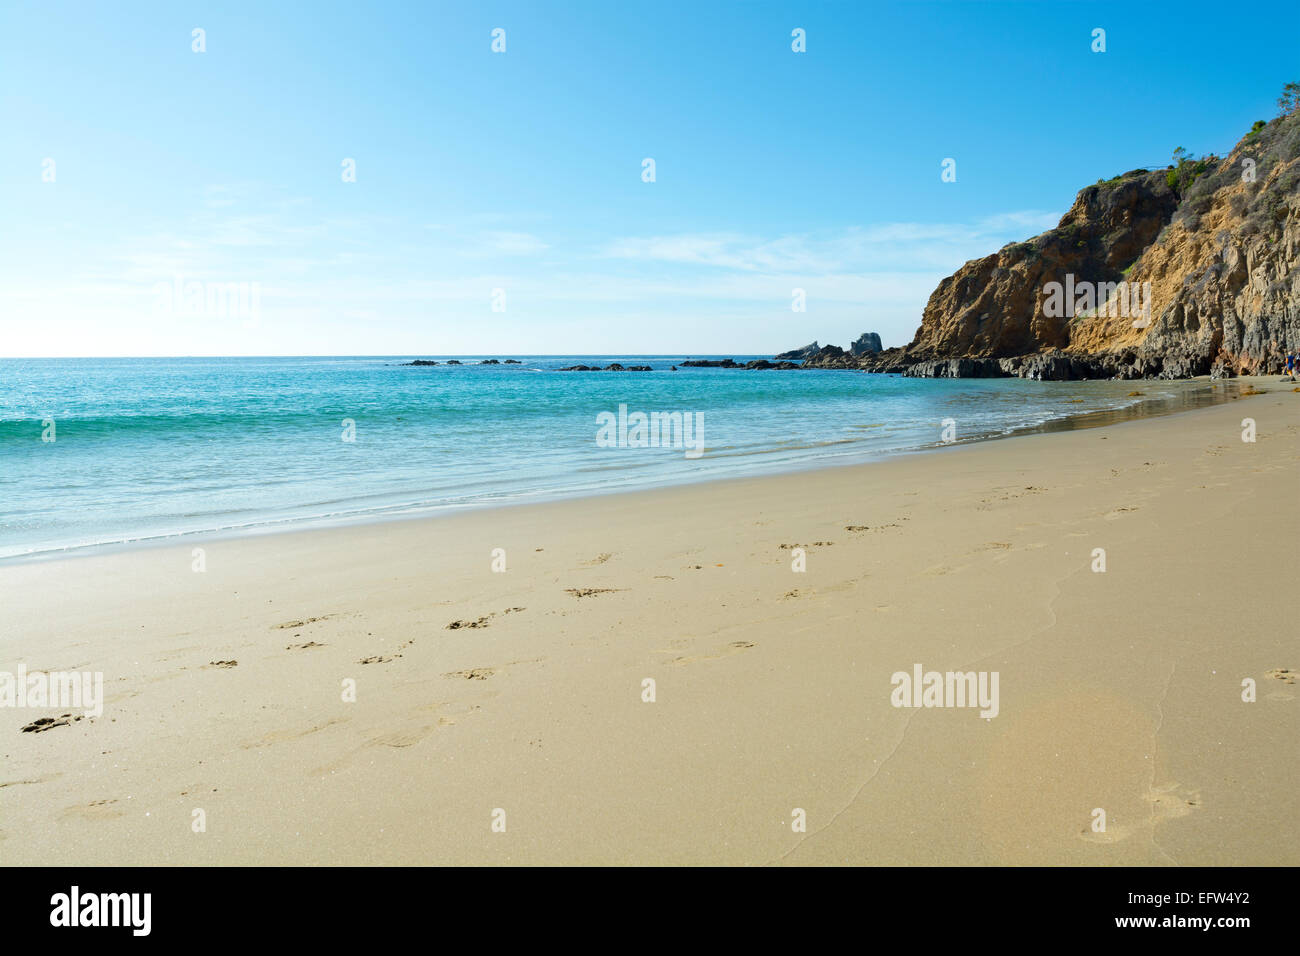 Un amplio panorama escénico de ocean surf que fluye suavemente contra una hermosa playa de arena en una cala aislada en Laguna Beach Foto de stock